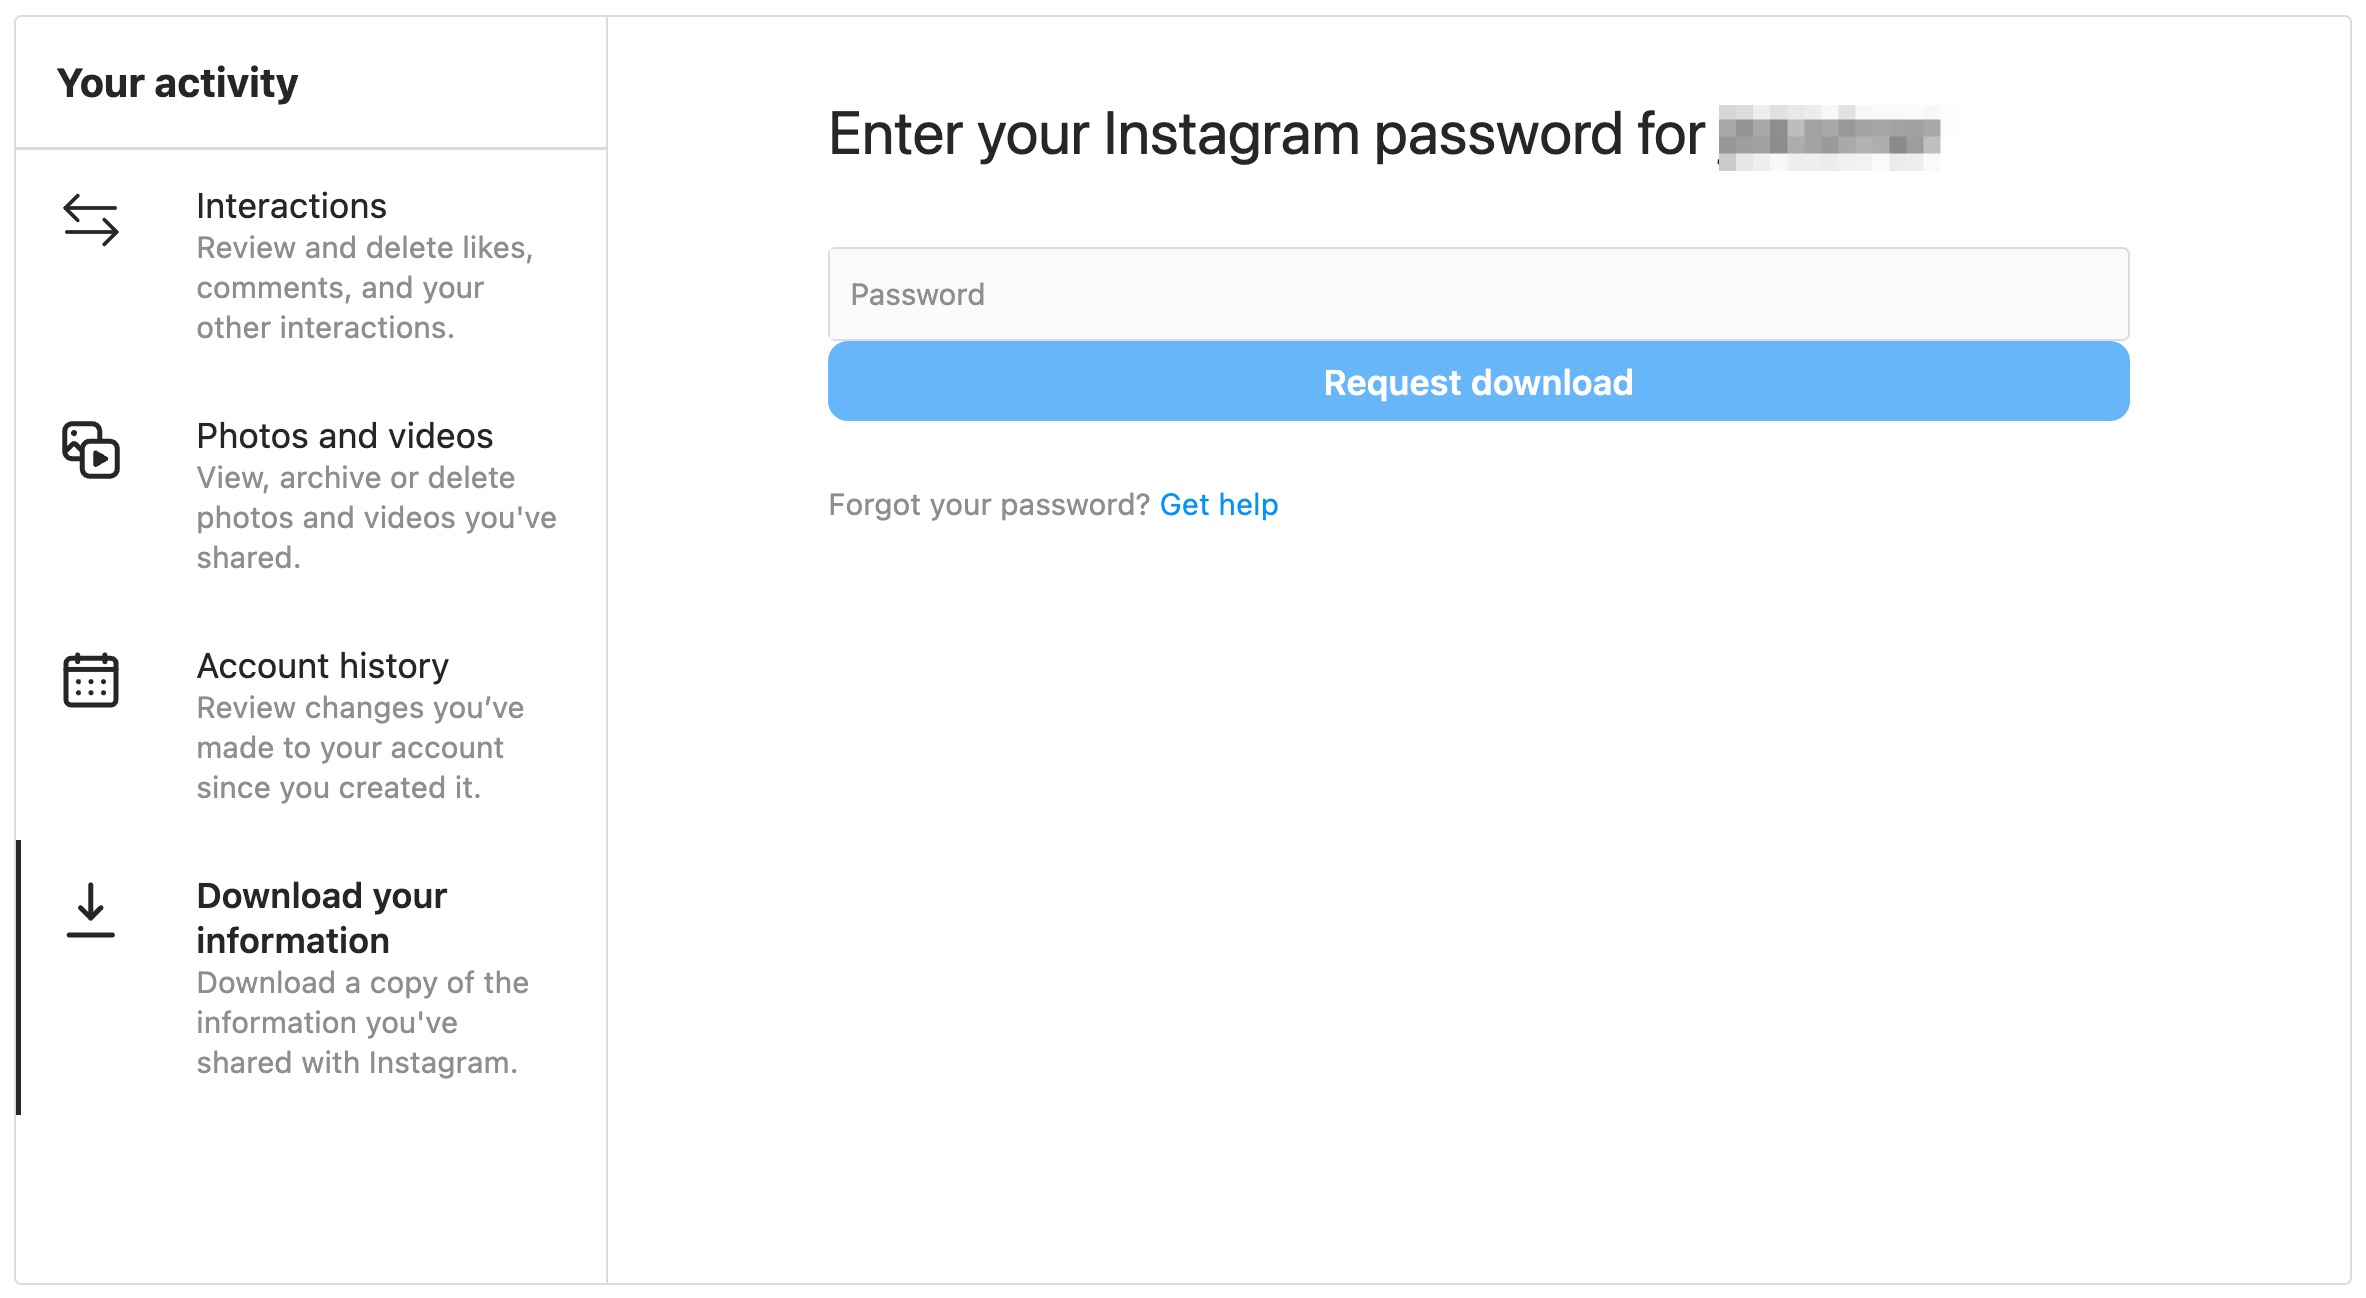 Instagram screen on Mac desktop asking to enter your Instagram password to request download.